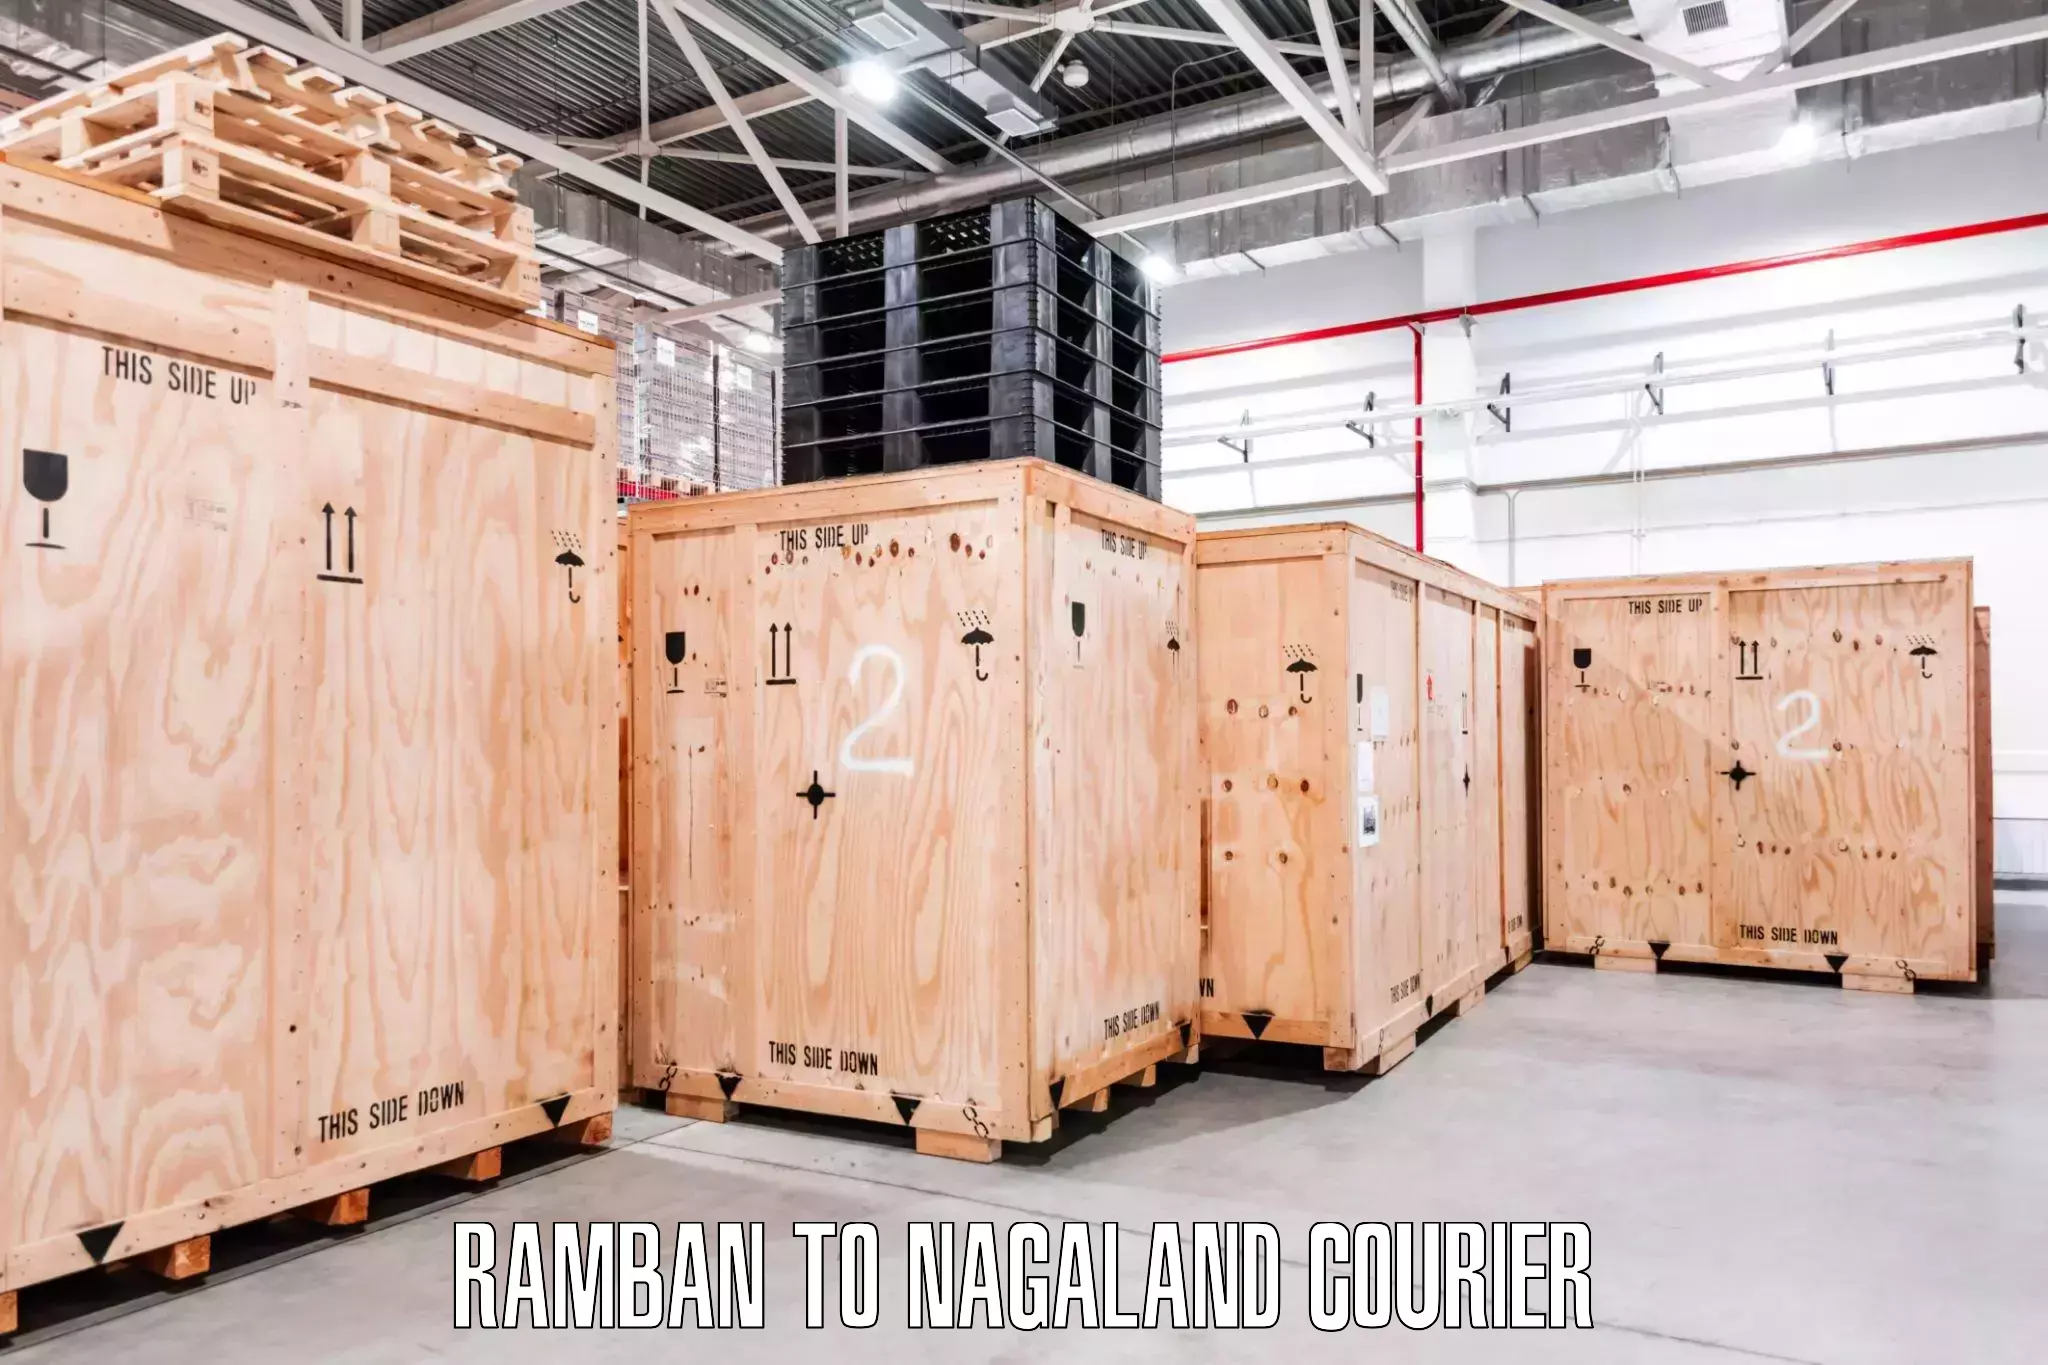 Expert packing and moving Ramban to Nagaland